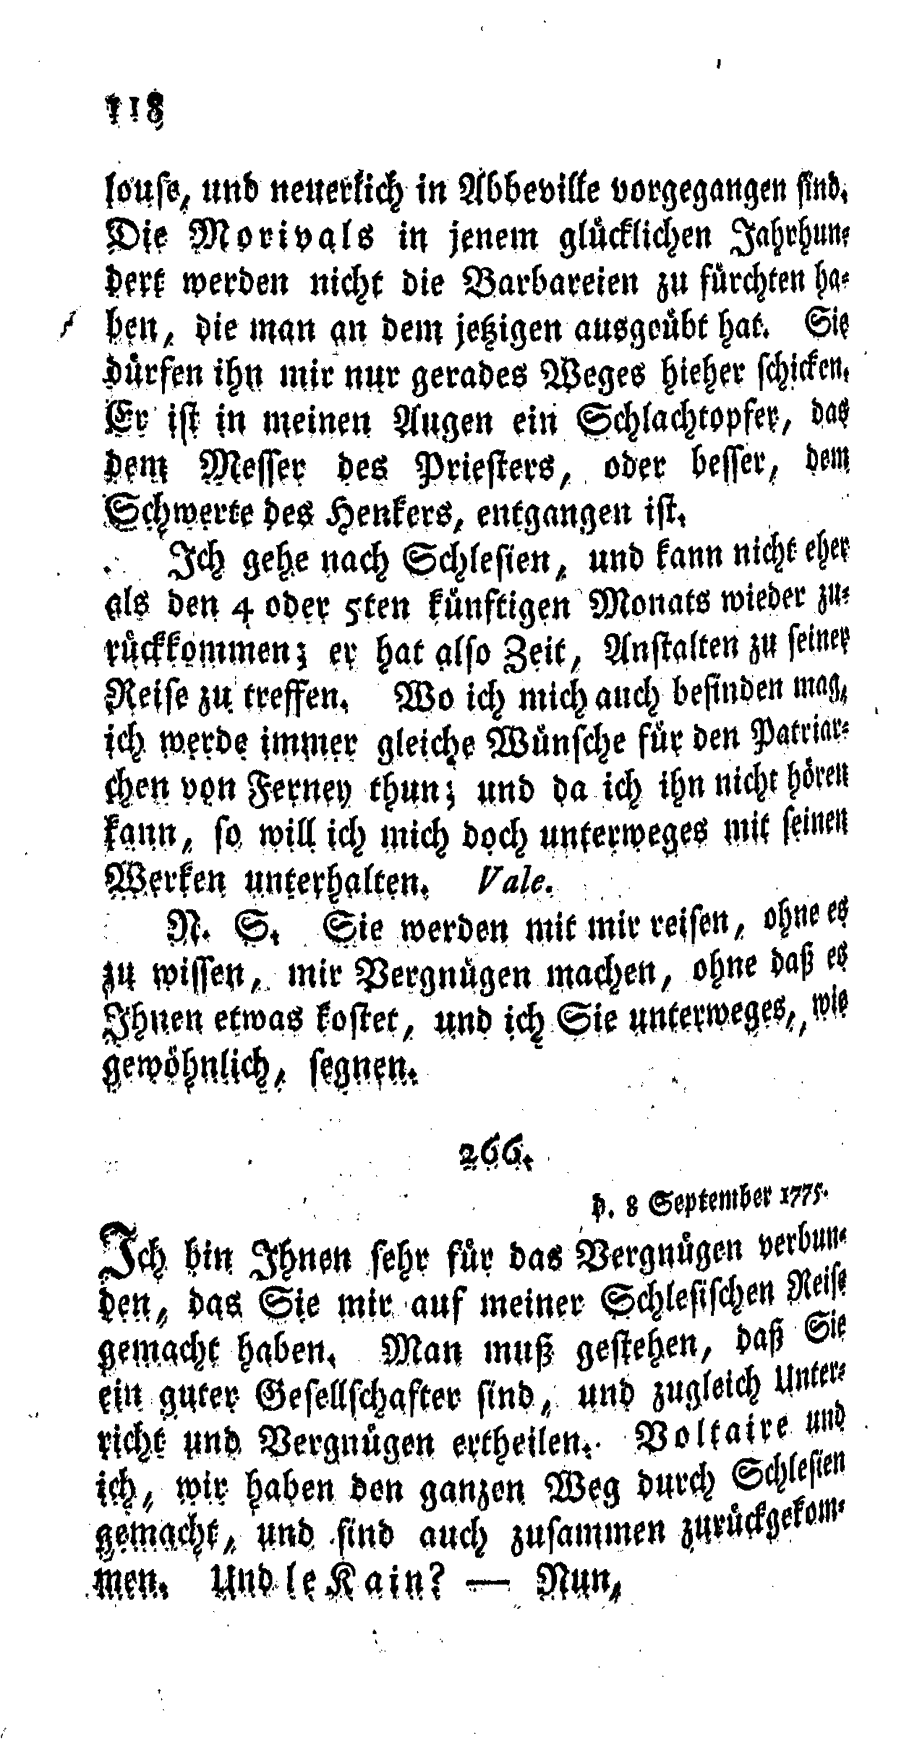 S. 118, Obj. 2